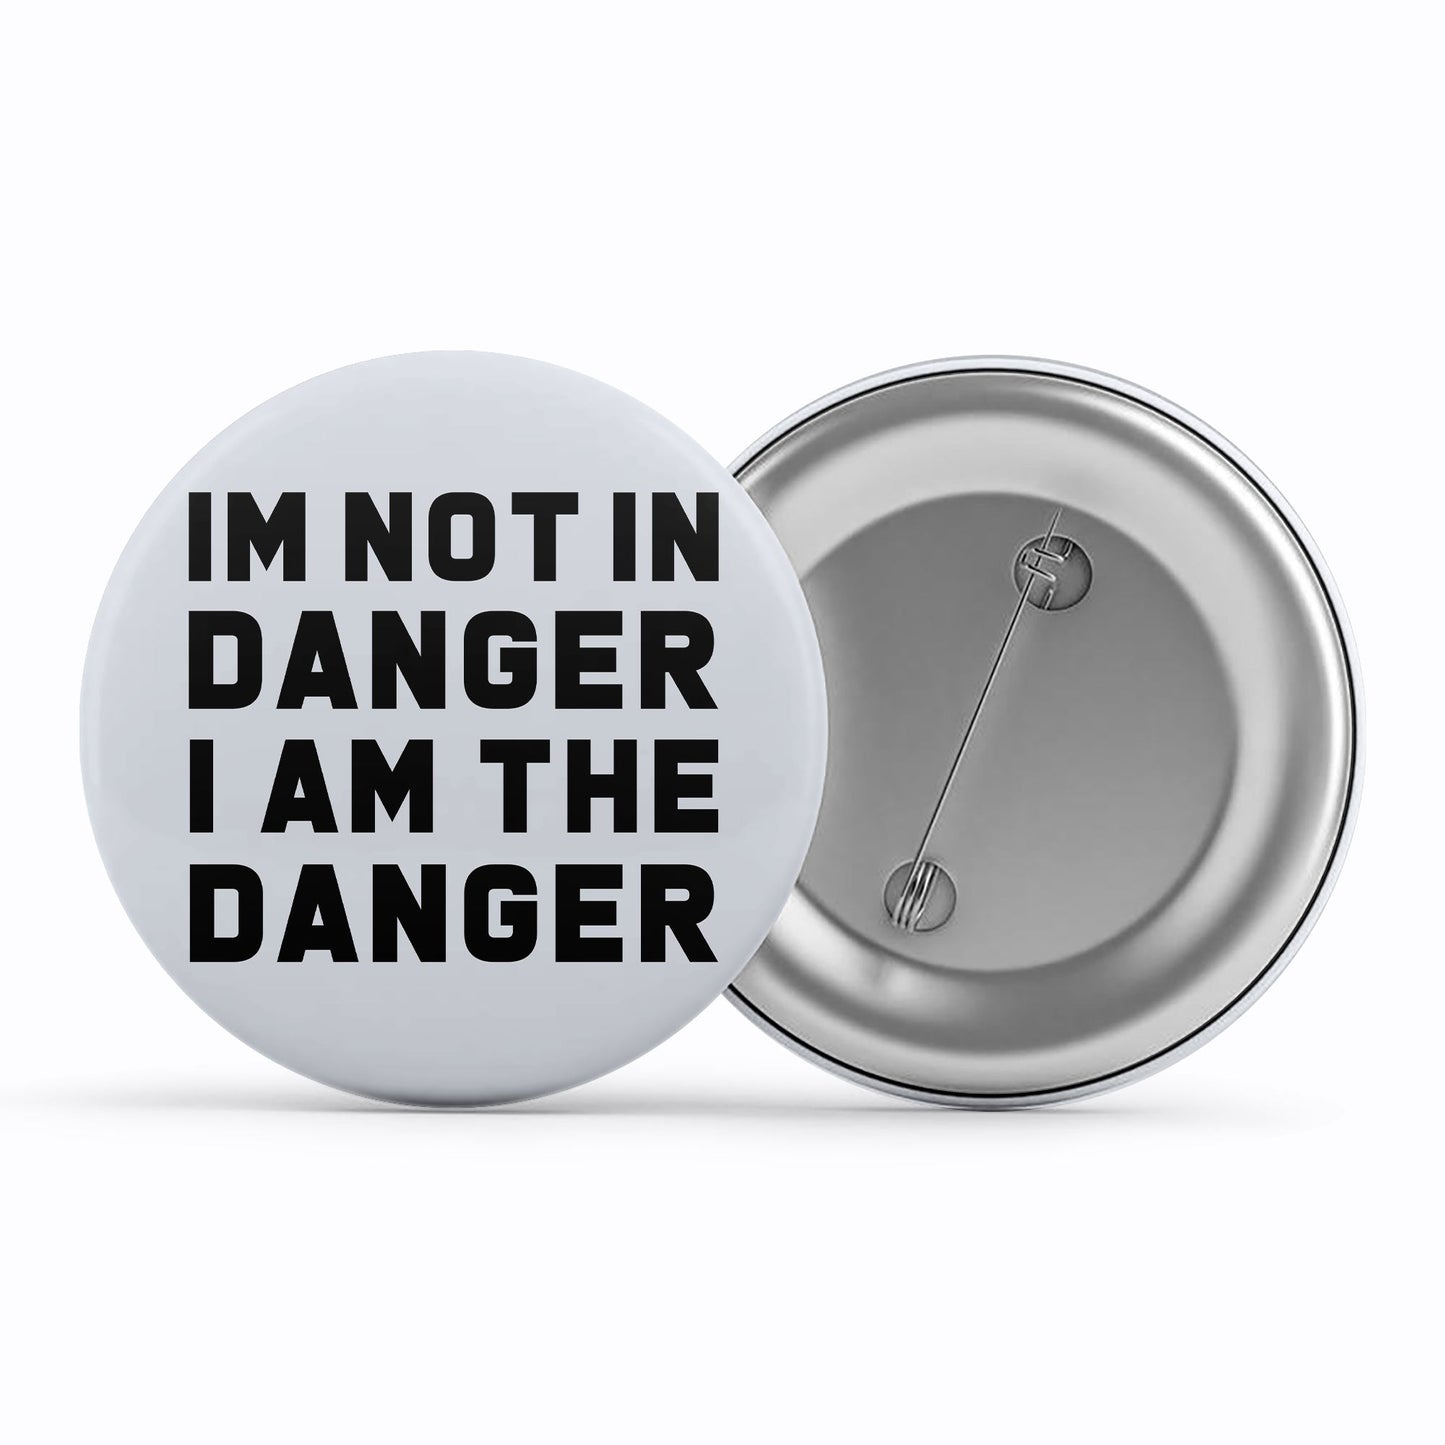 Breaking Bad Badge - Walter White Danger Metal Pin Button The Banyan Tee TBT